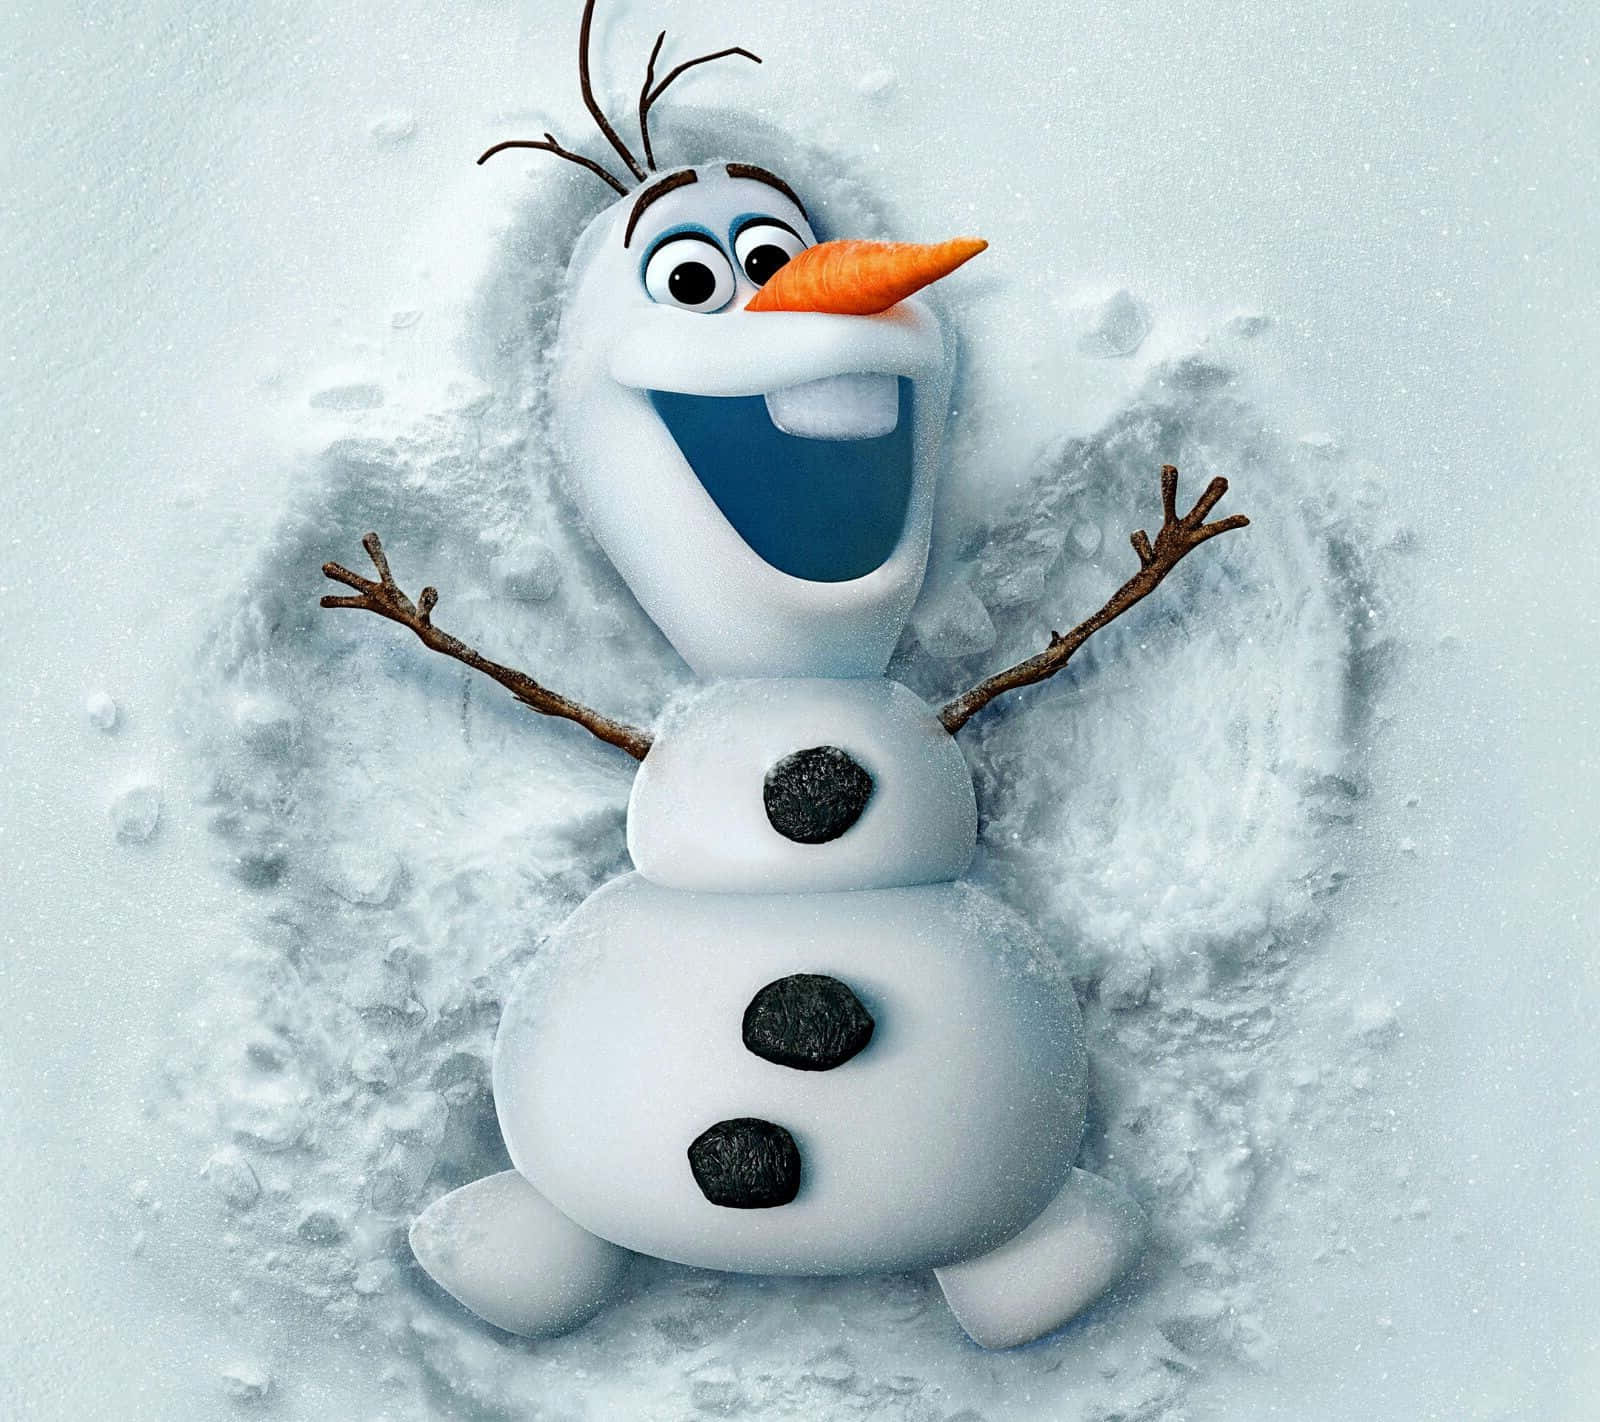 Winter Fun with Olaf